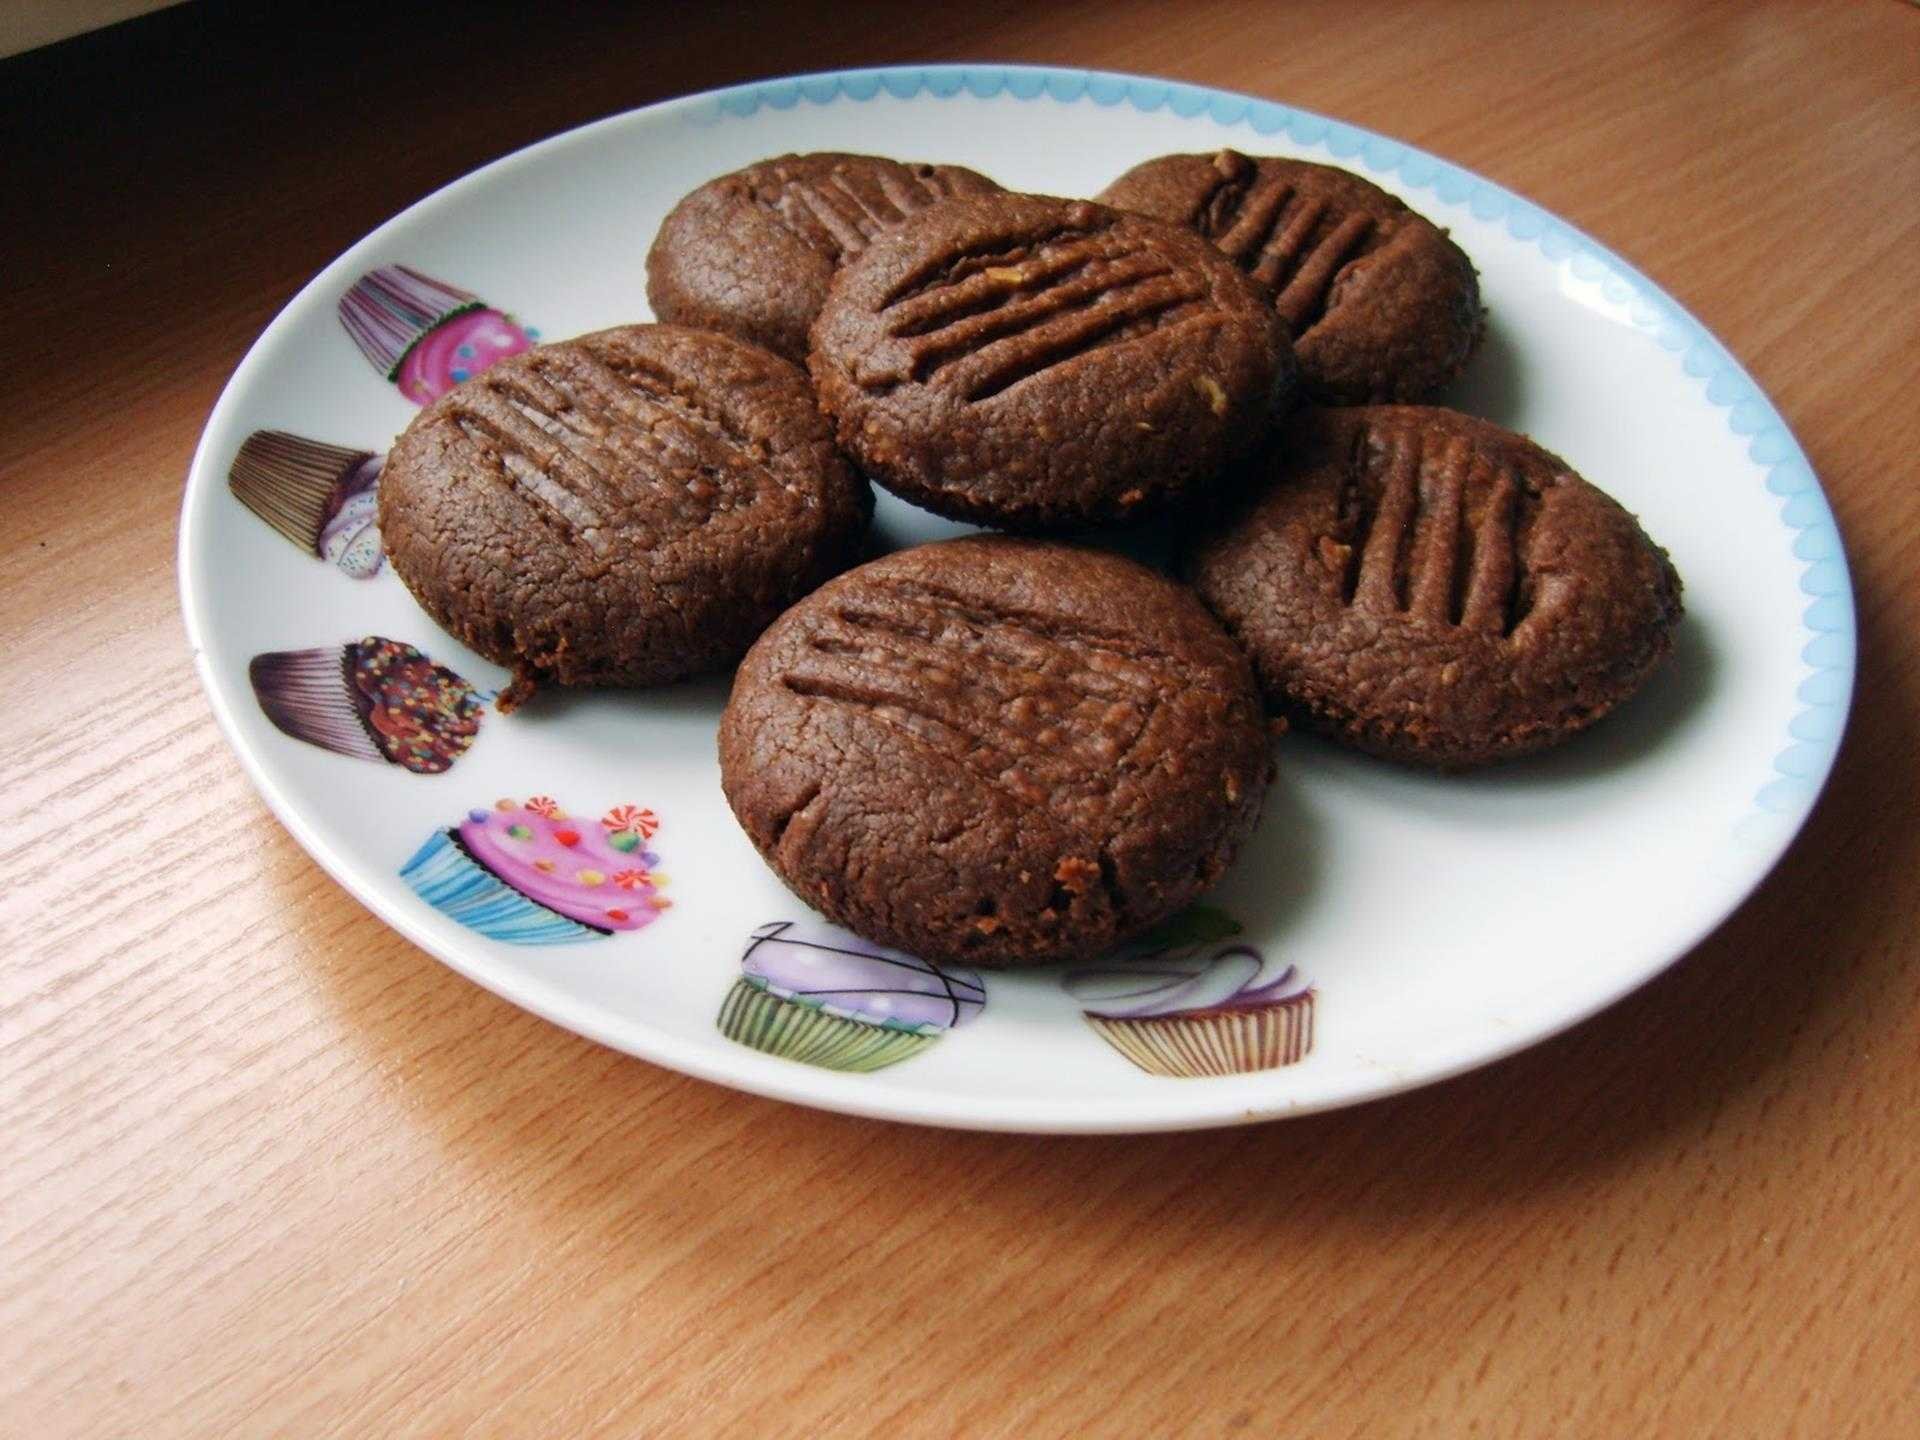 Печенье из какао без масла